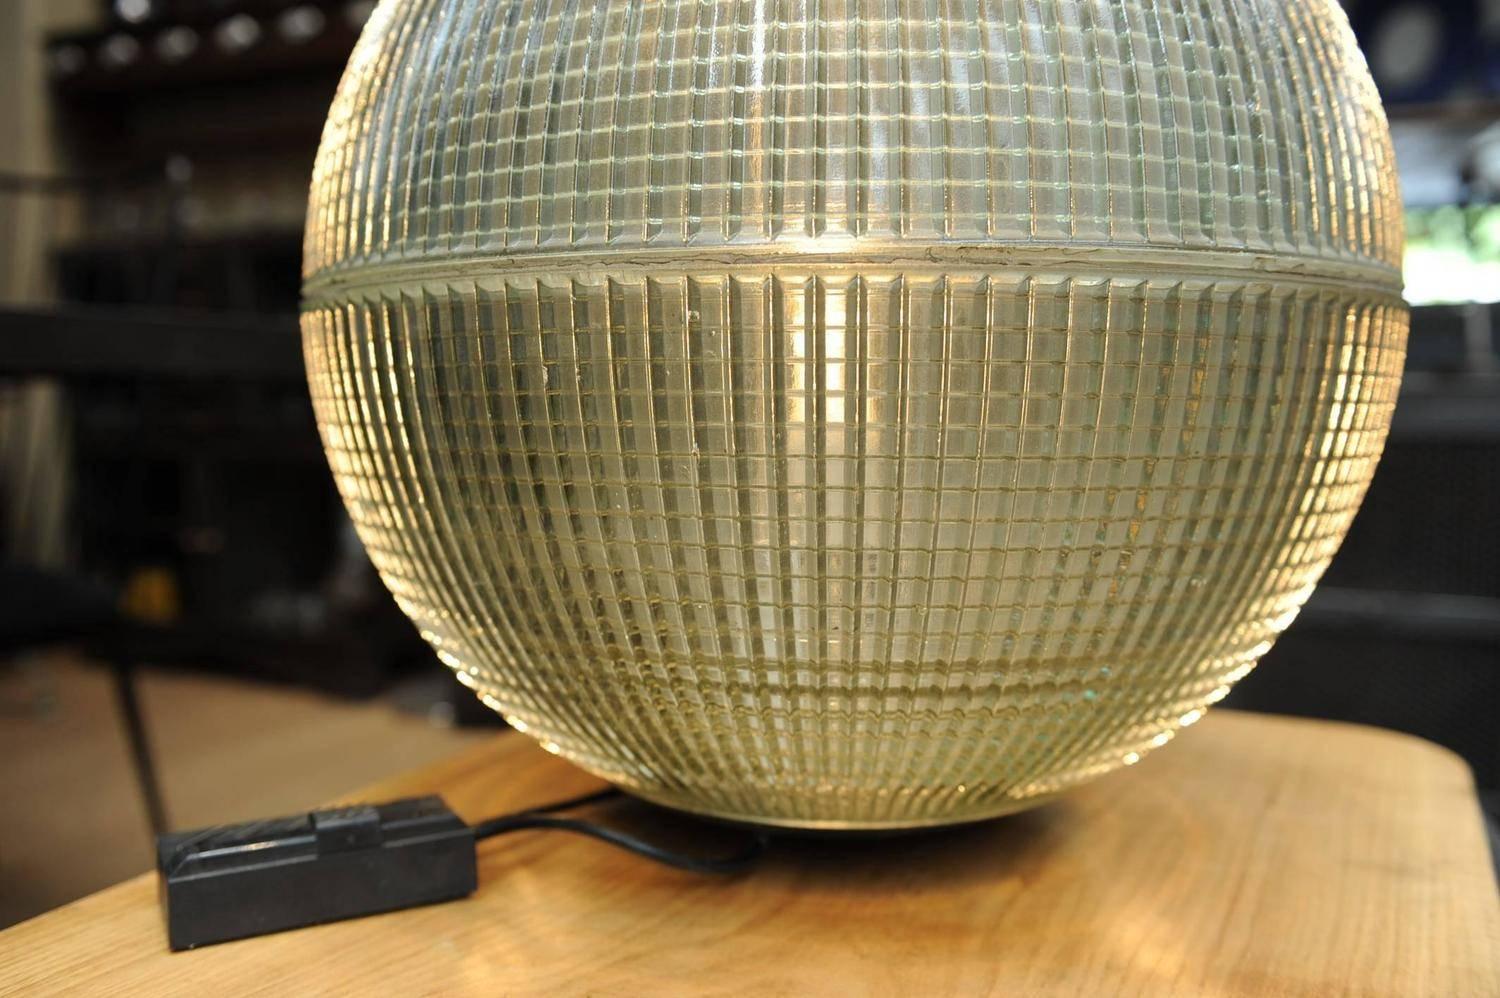  Large Glass Holophane Globe Street Light in Desk or Table Light 1